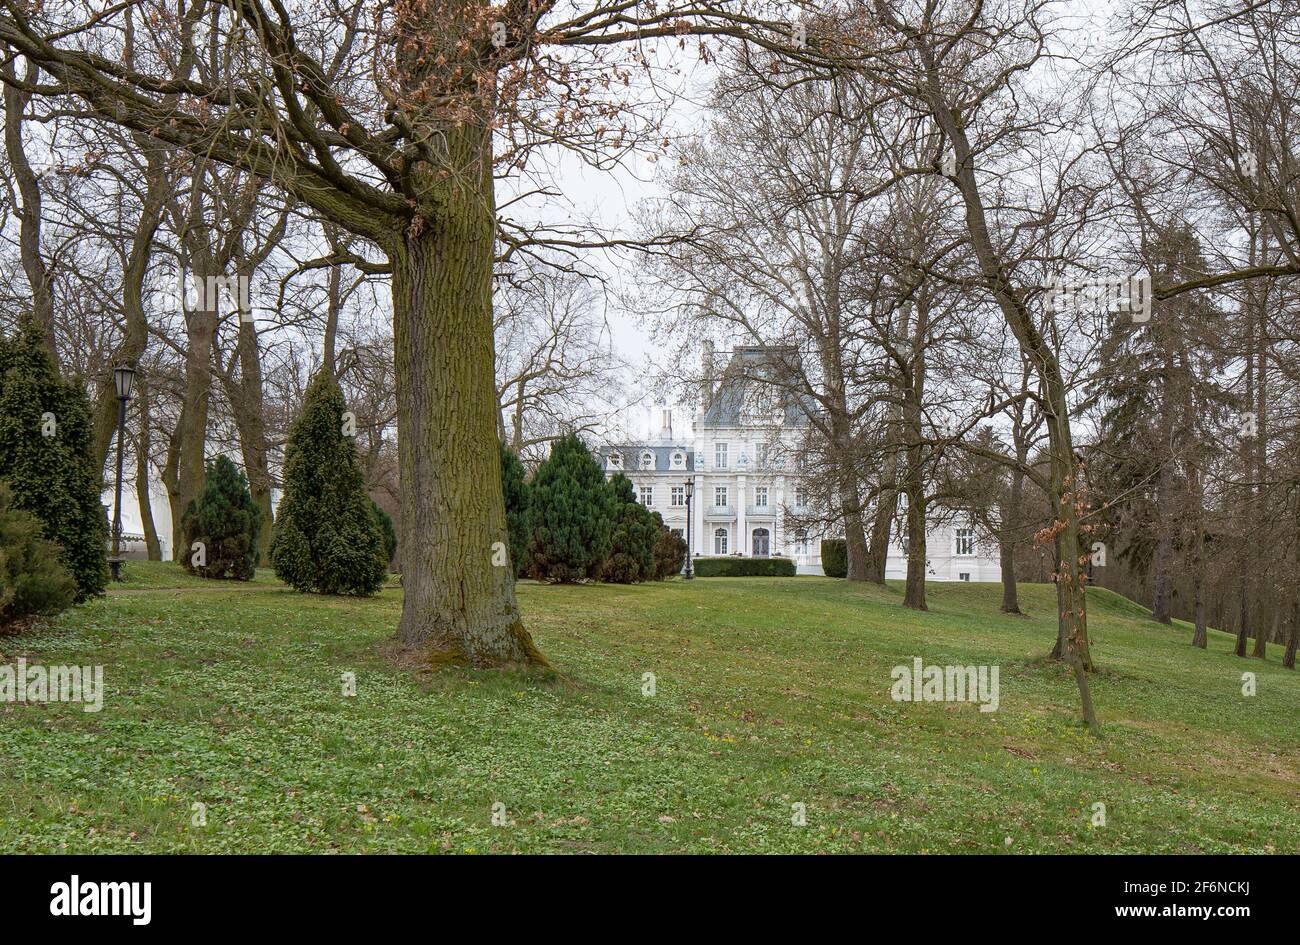 Palace and park in Zakrzewo, Wielkopolska province. Winter landscape, early spring. Stock Photo